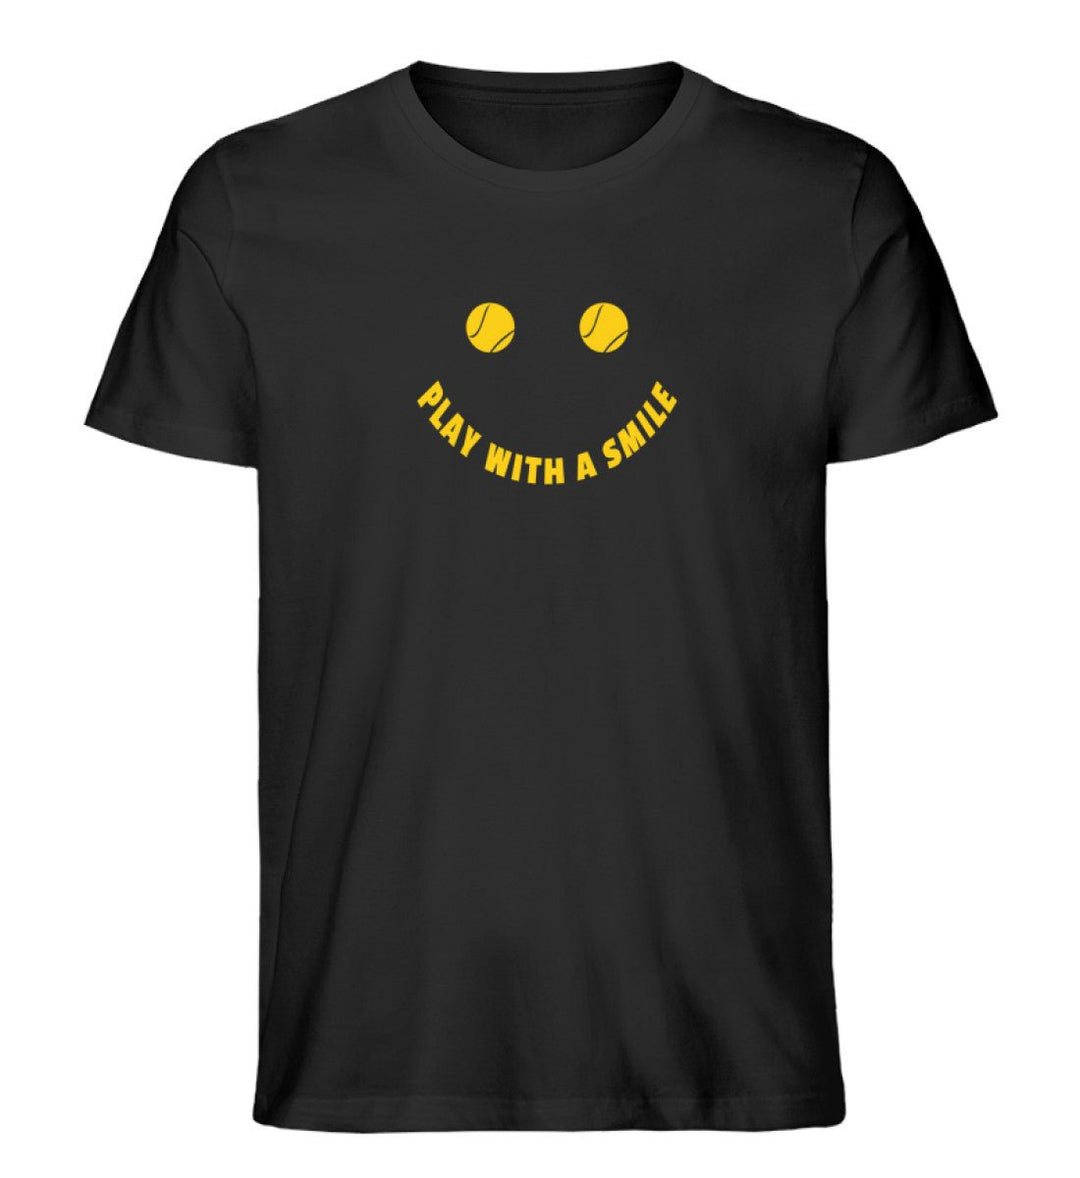 Play with a smile | Premium Herren T-Shirt - Matchpoint24 - Kleidung für Tennisfans